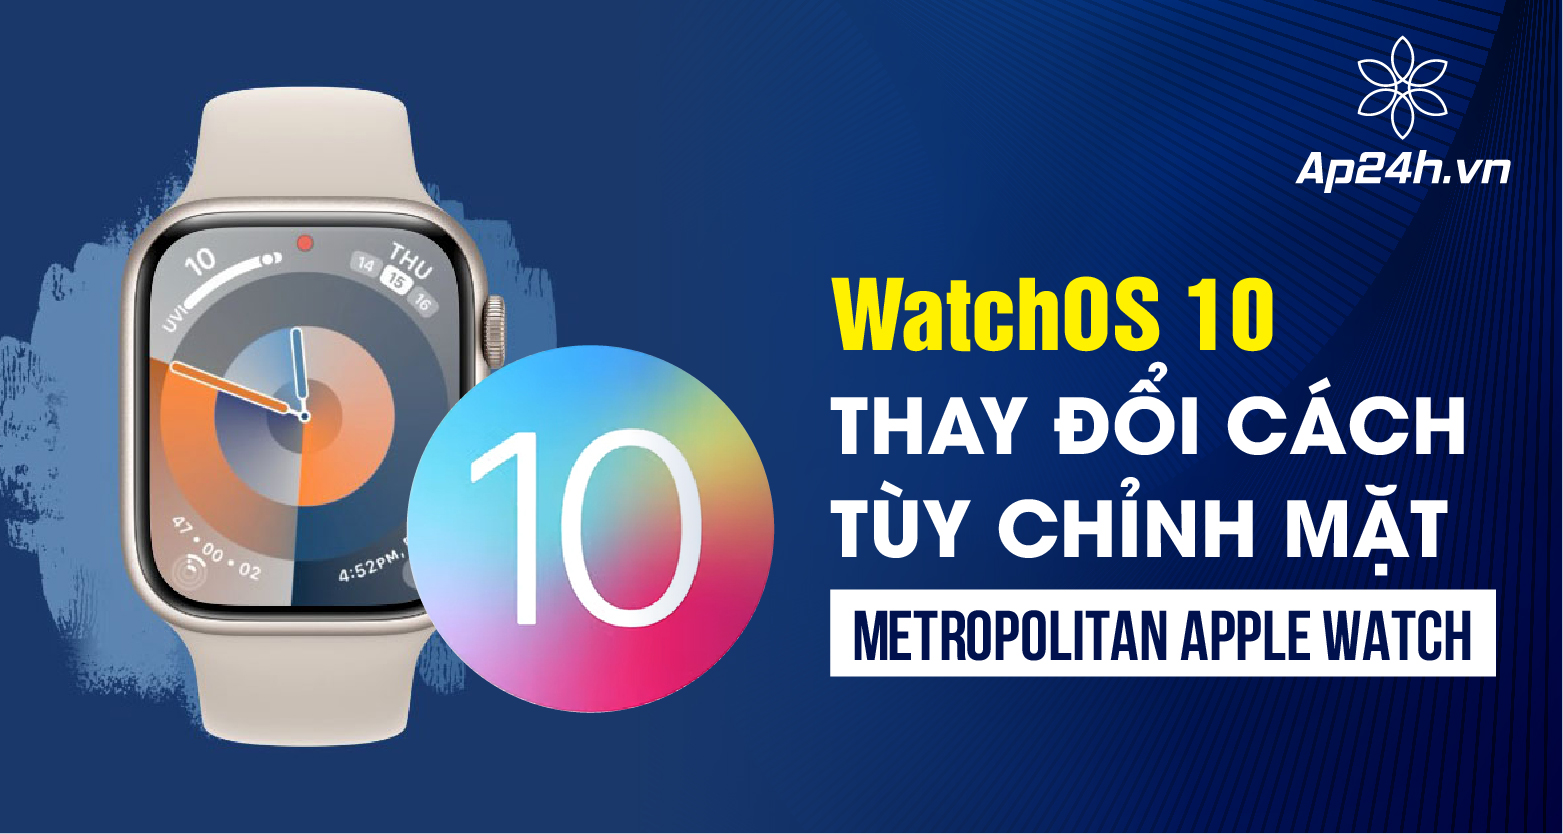  WatchOS 10 thay đổi cách tùy chỉnh mặt Metropolitan Apple Watch